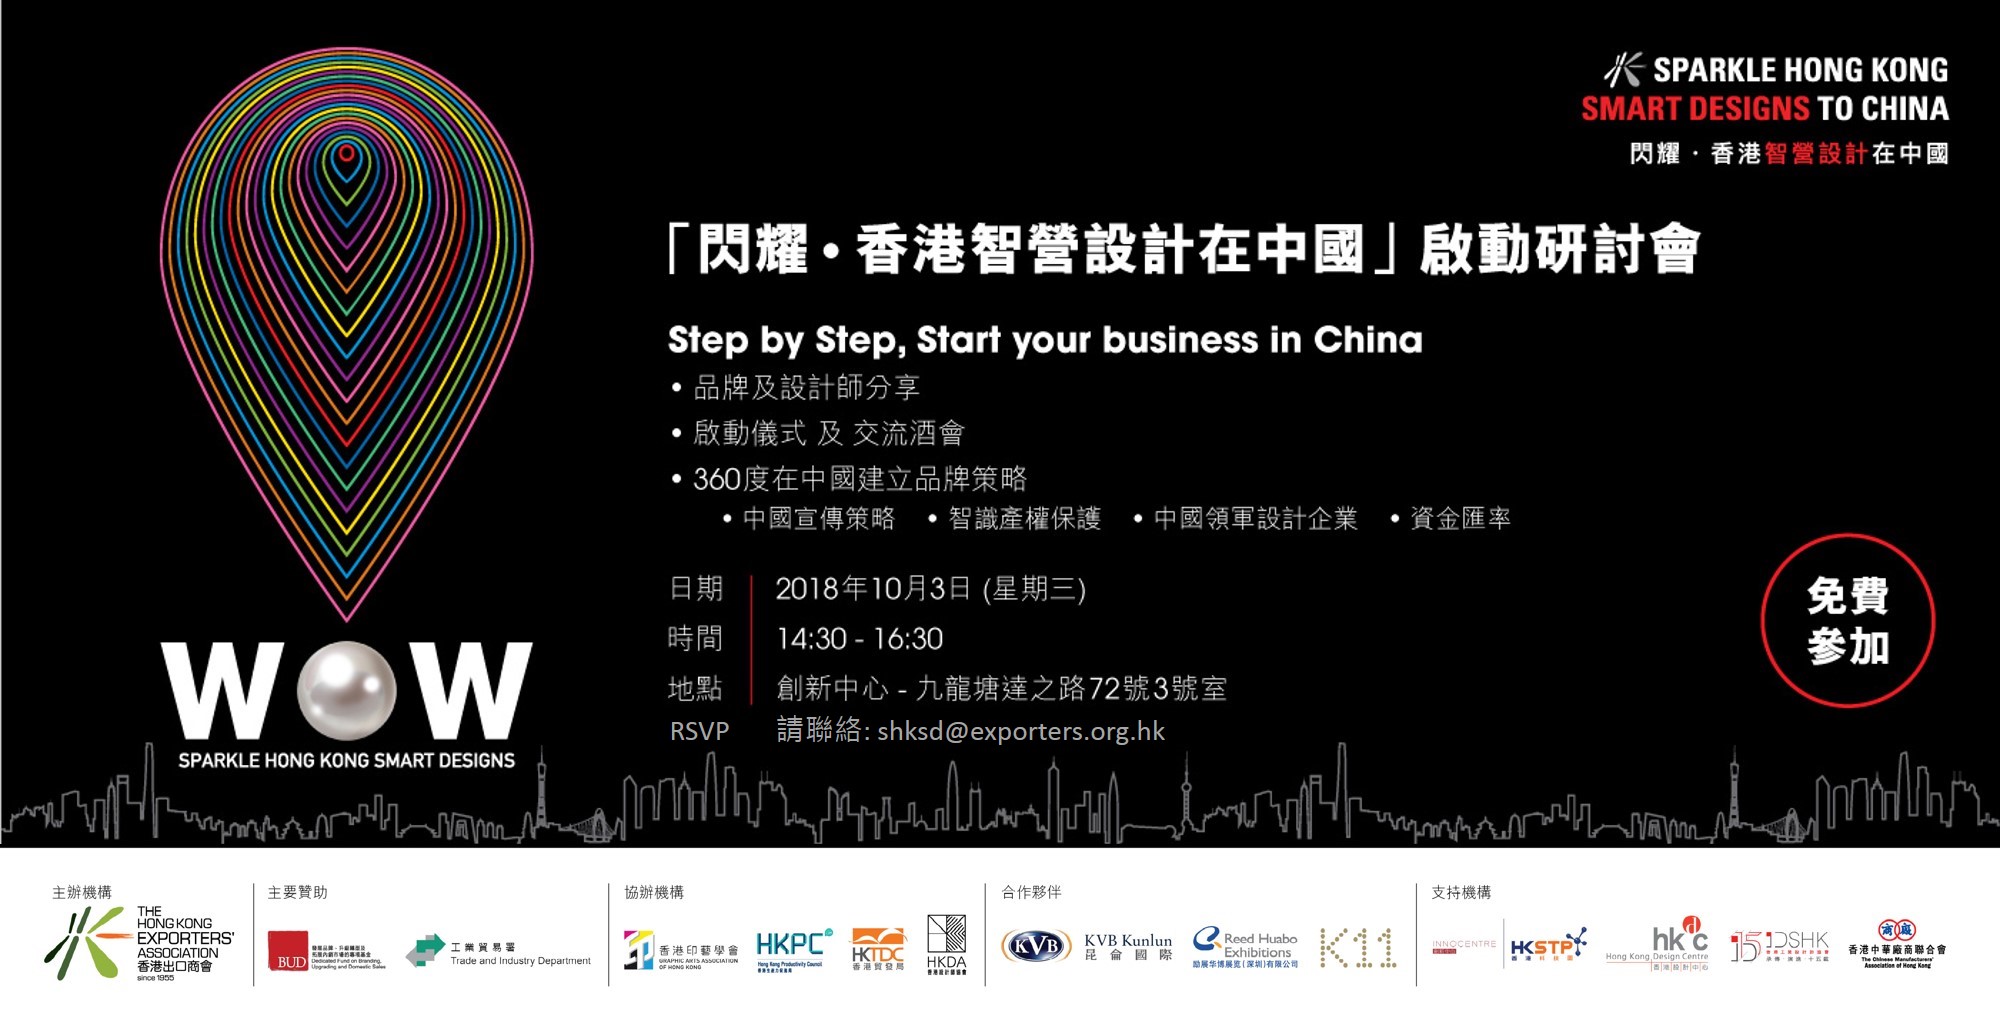 支持活动 - 第一届 “「闪耀‧香港智营设计在中国」启动研讨会